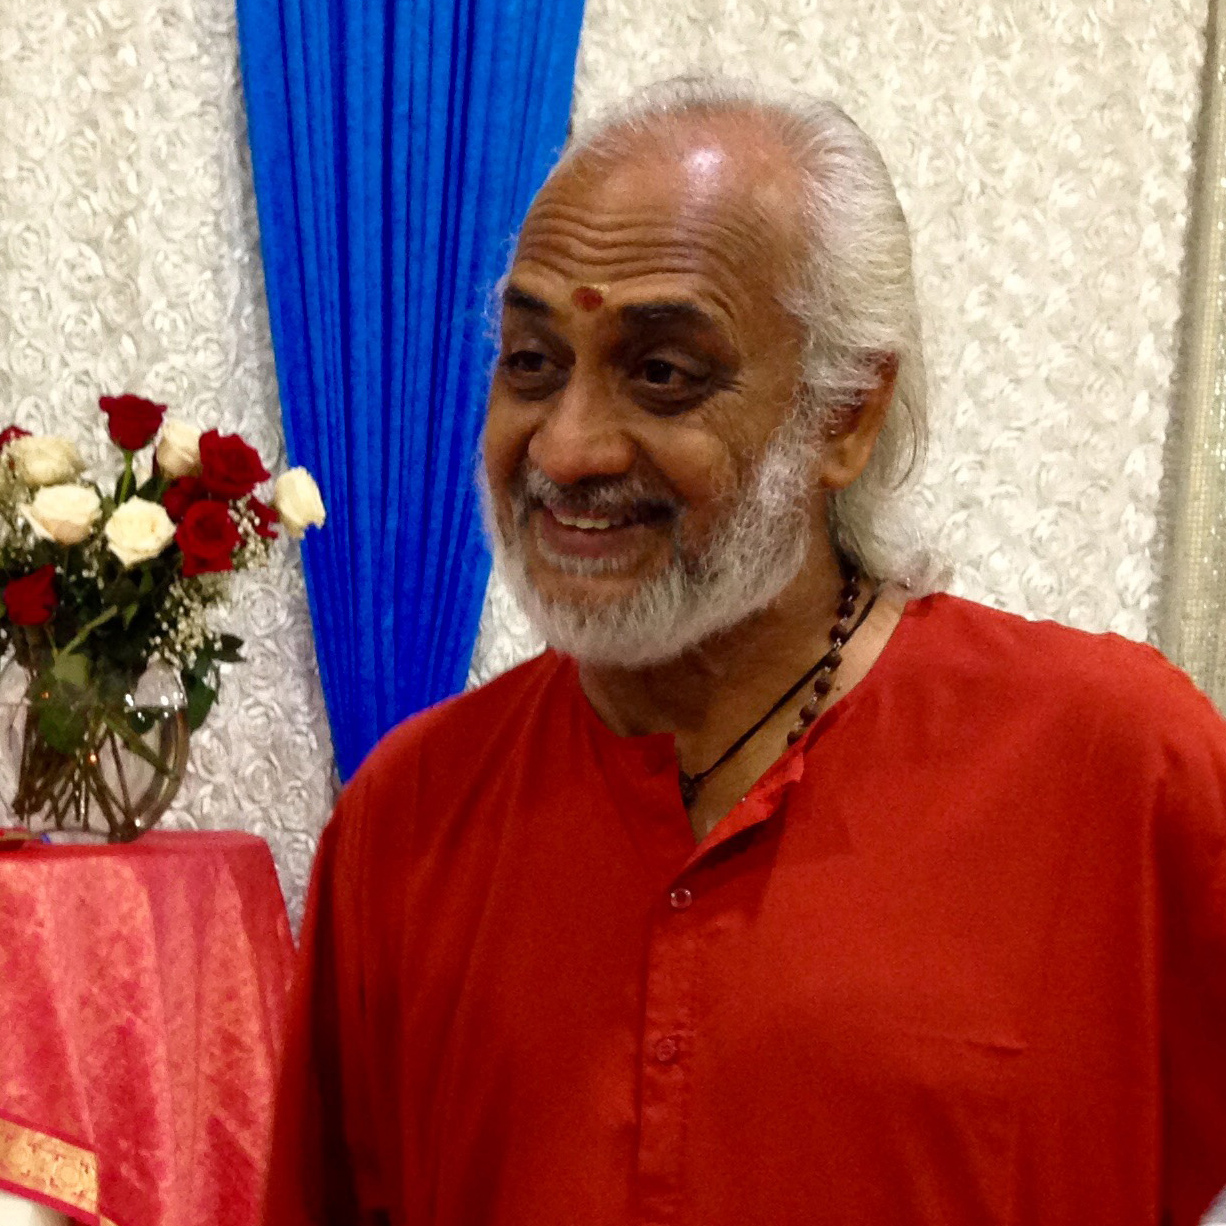 Swami Ramakrishnananda smiling